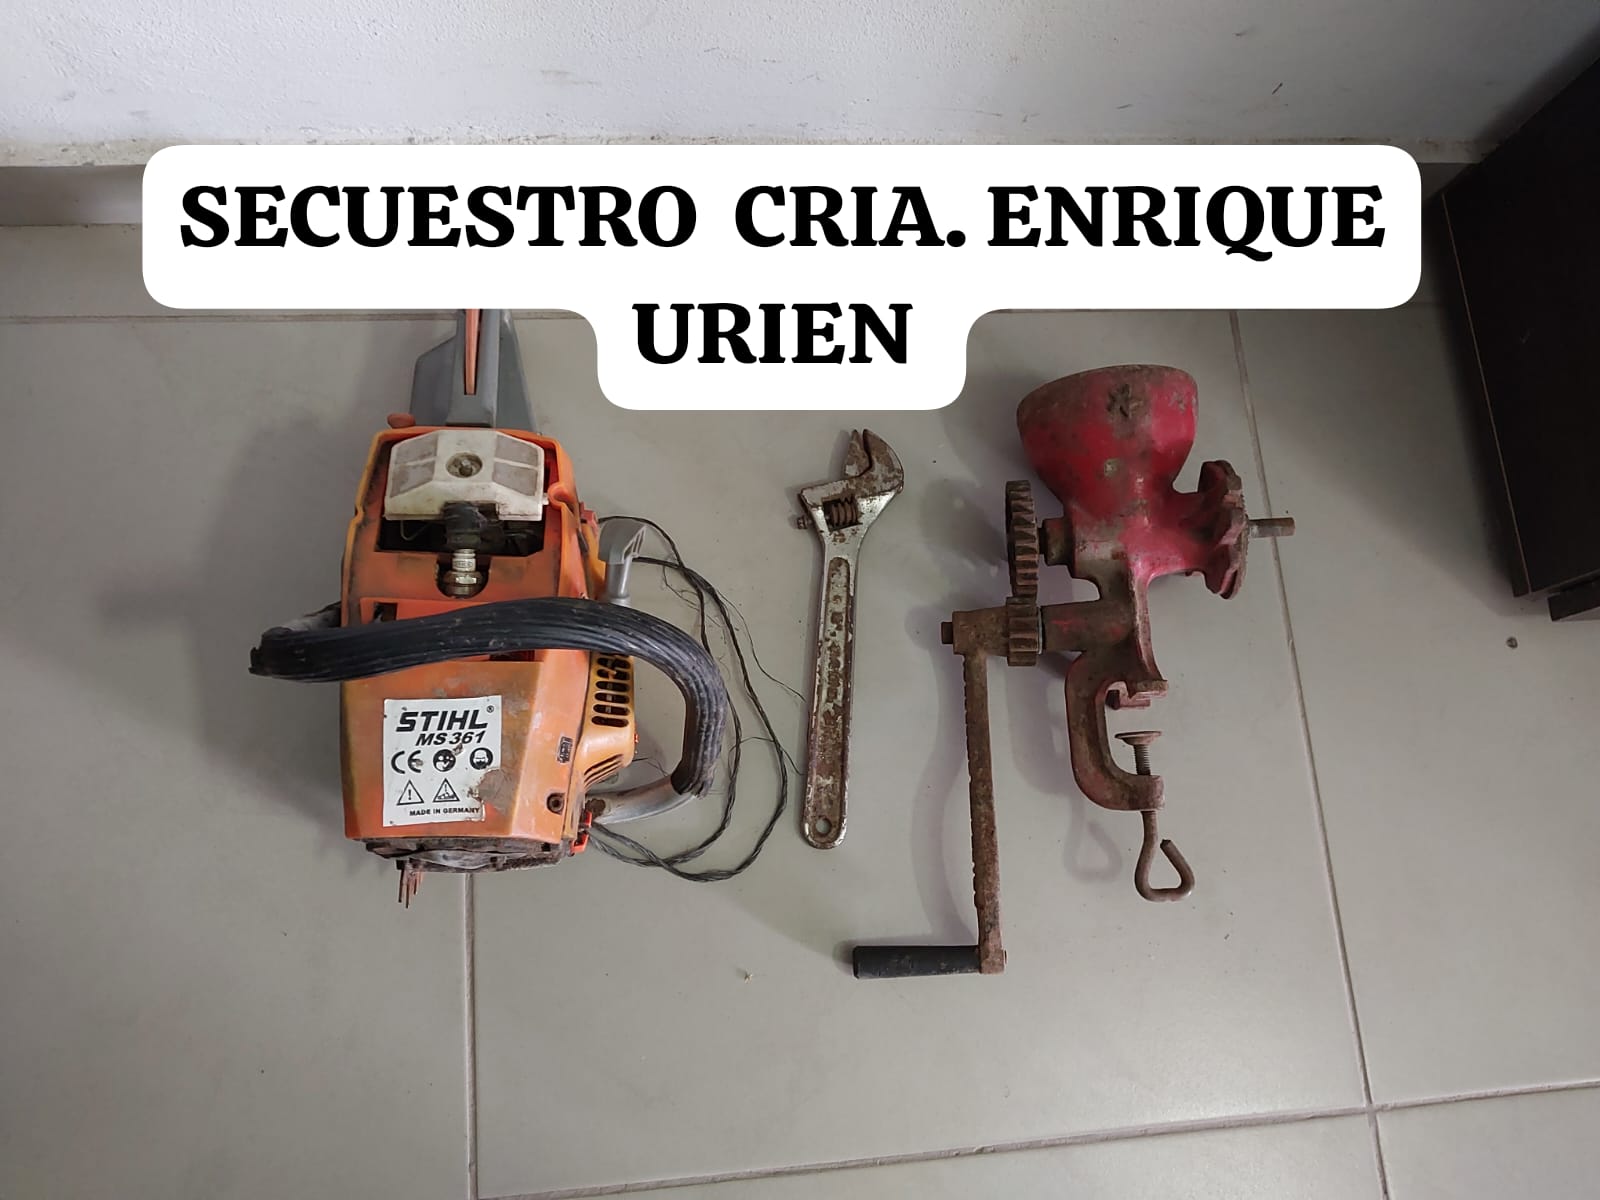 Enrique Urien: HOMBRE DENUNCIA UN ROBO  EN SU PROPIEDAD